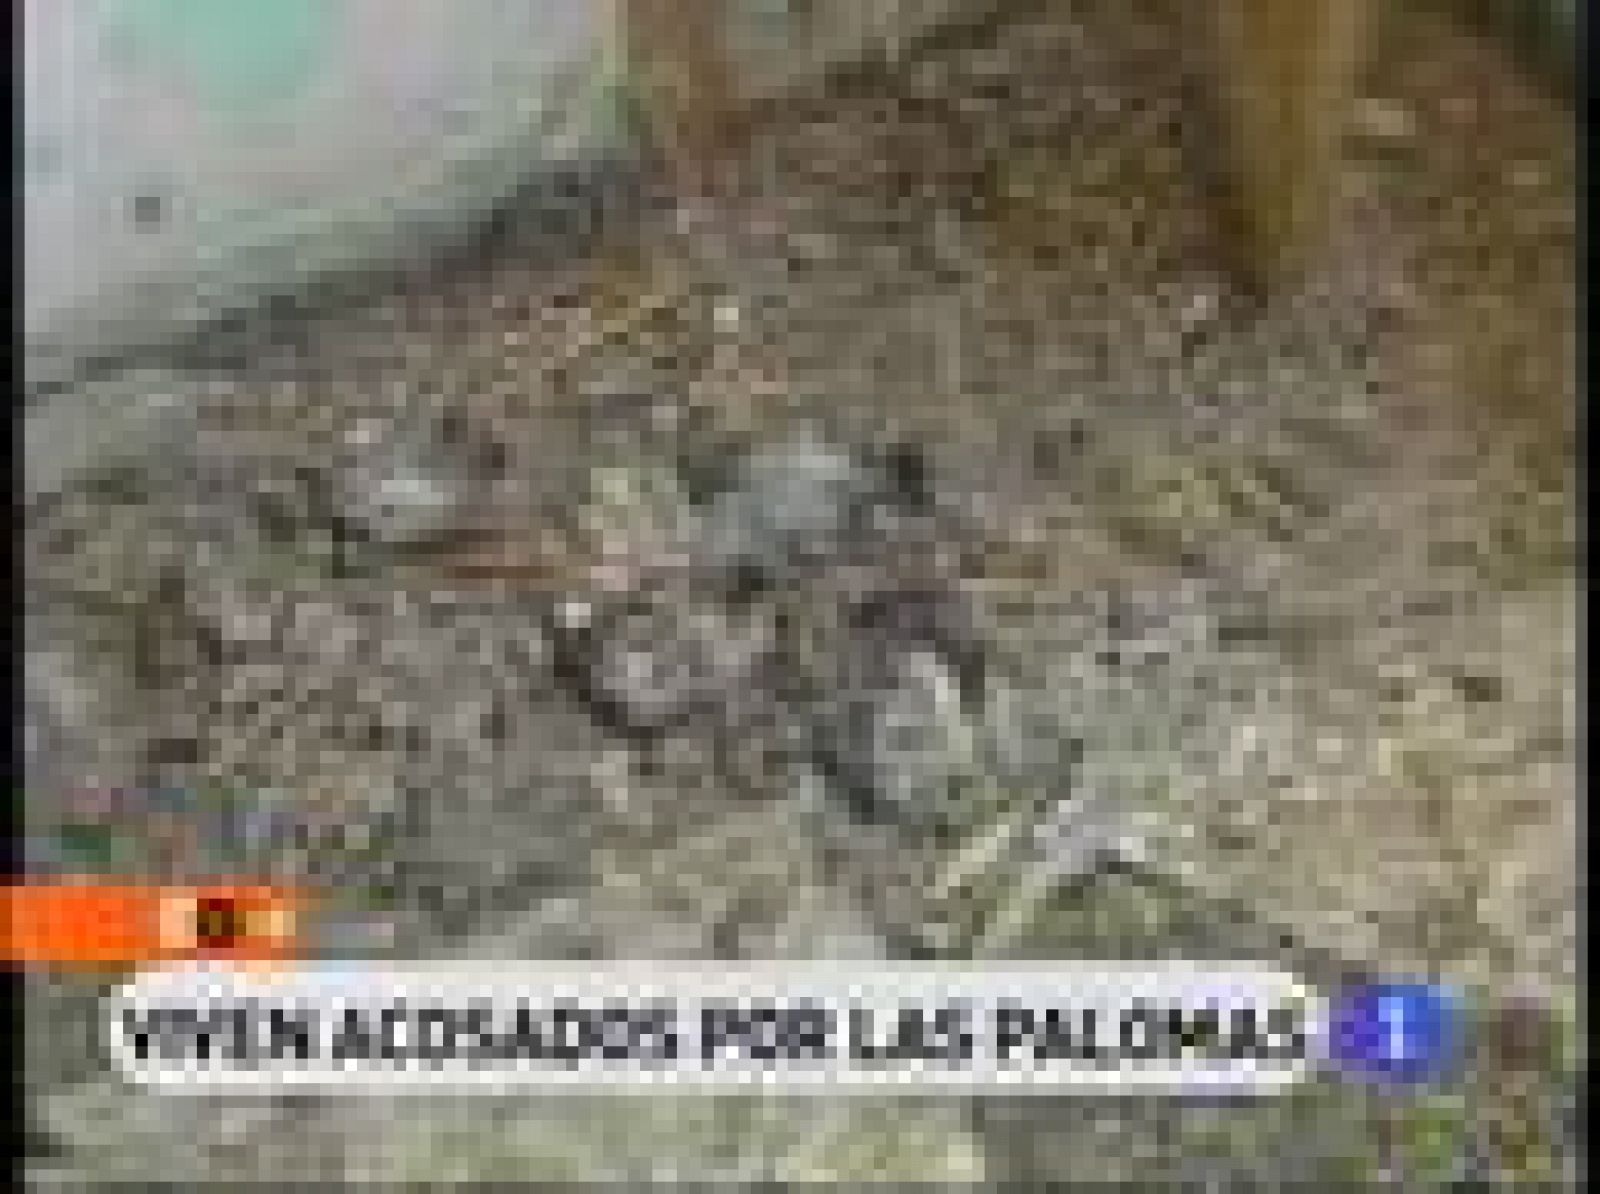 Cinta, nuestra reportera, ha entrado a un edificio de Zaragoza tomado literalmente por las palomas. Estuvimos allí hace sólo tres meses,y hoy, al volver, quedamos sorprendidos.